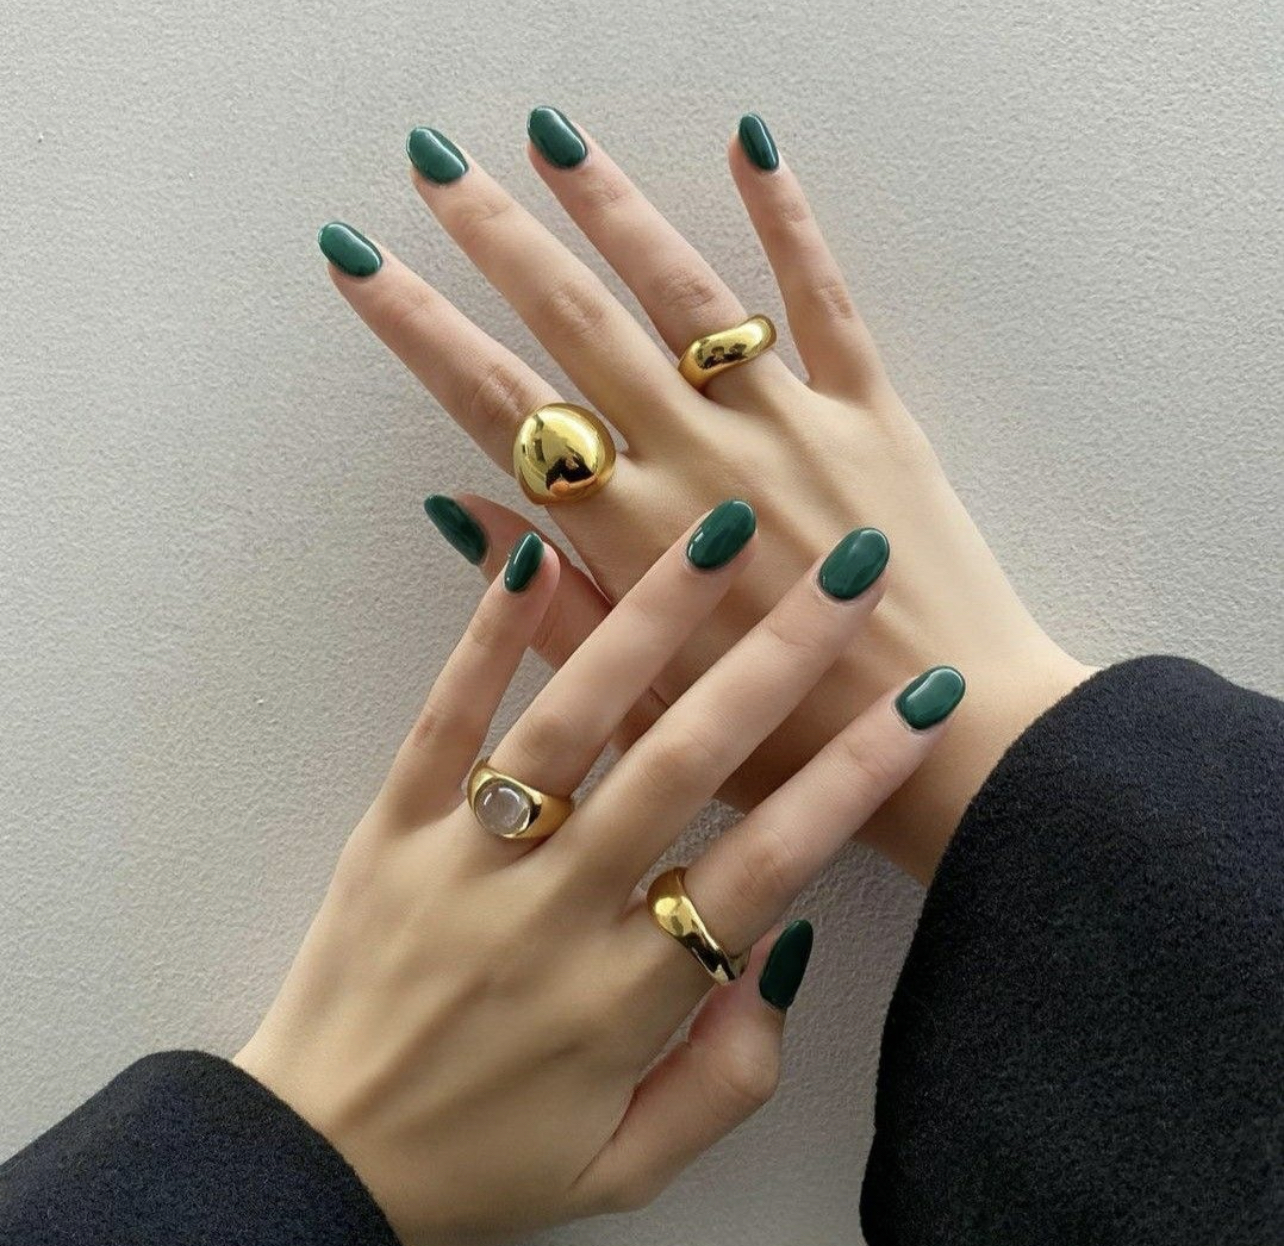 Τα emerald nails είναι η νέα τάση στα νύχια που αγαπούν οι Selena Gomez και Sydney Sweeney